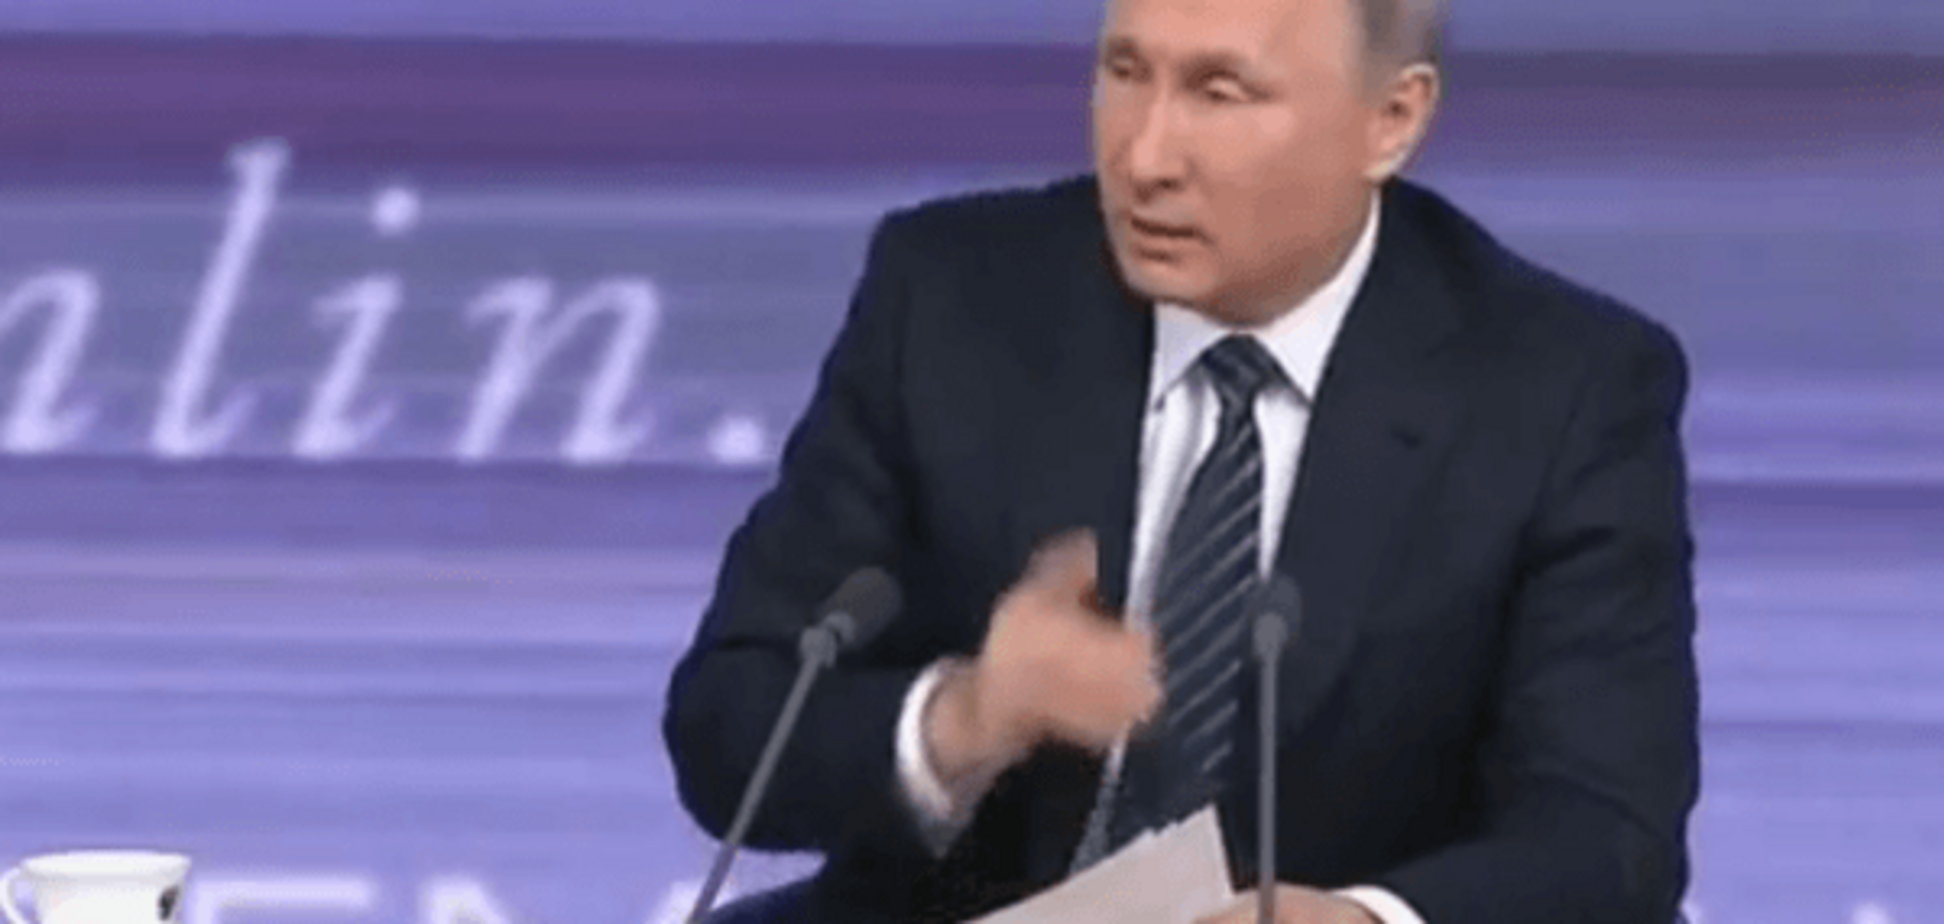 Торік була біла: Путін розпочав прес-конференцію із сумного анекдоту